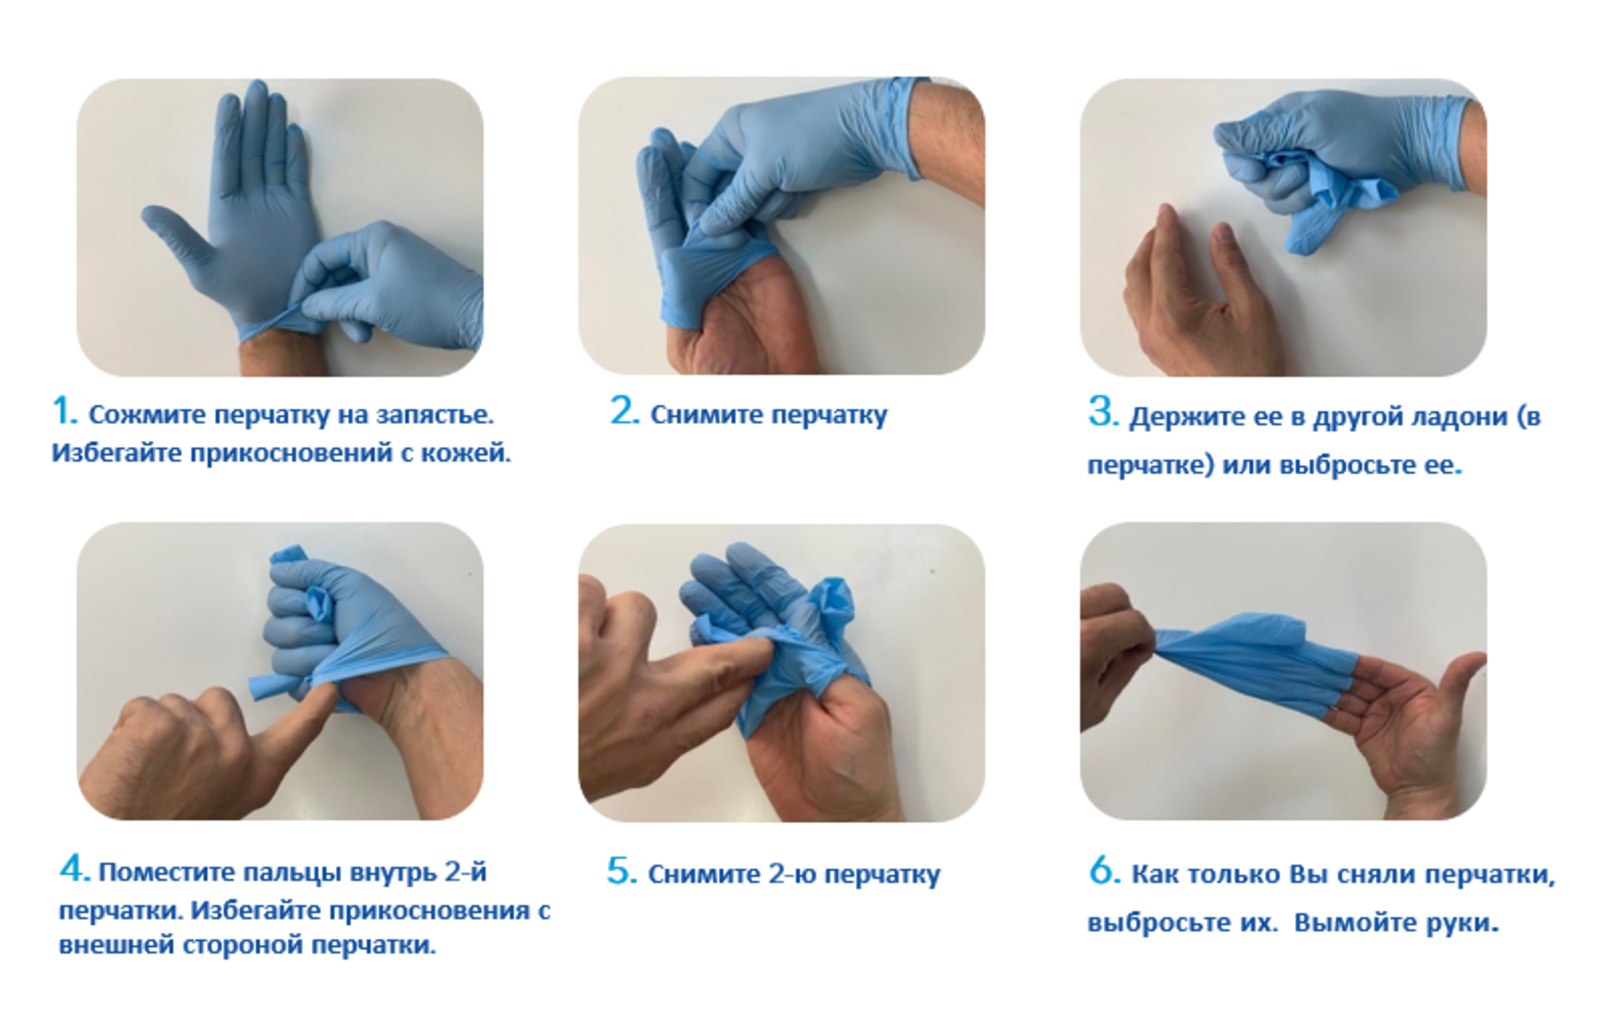 Техника надевания стерильных перчаток. Алгоритм одевания и снятия перчаток медицинских. Алгоритм снимания стерильных перчаток. Правила одевания стерильных перчаток.